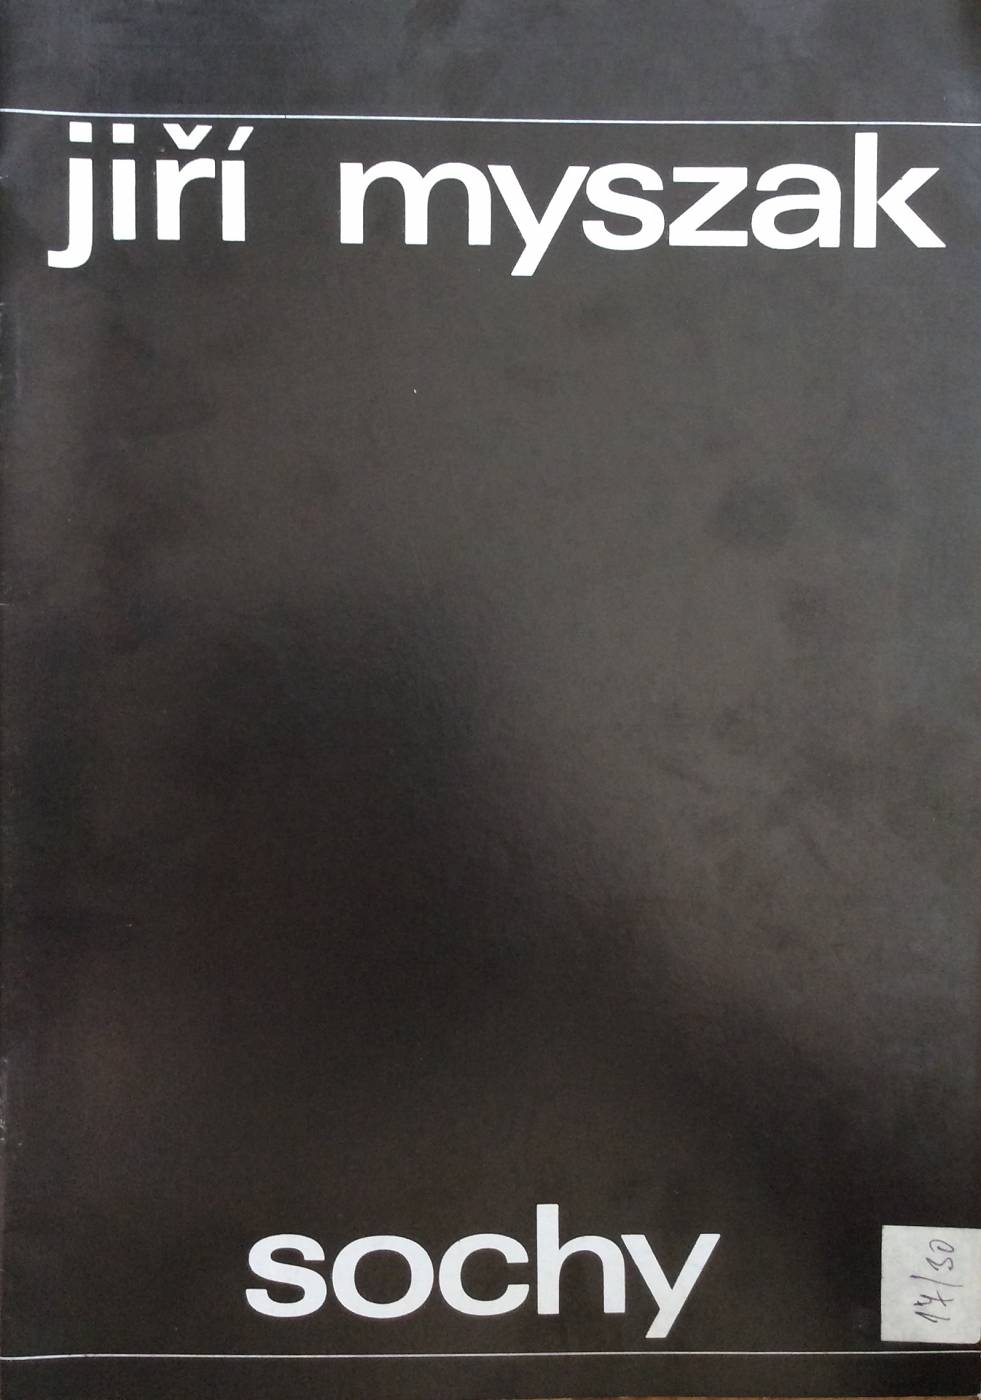 Jiří Myszak – sochy